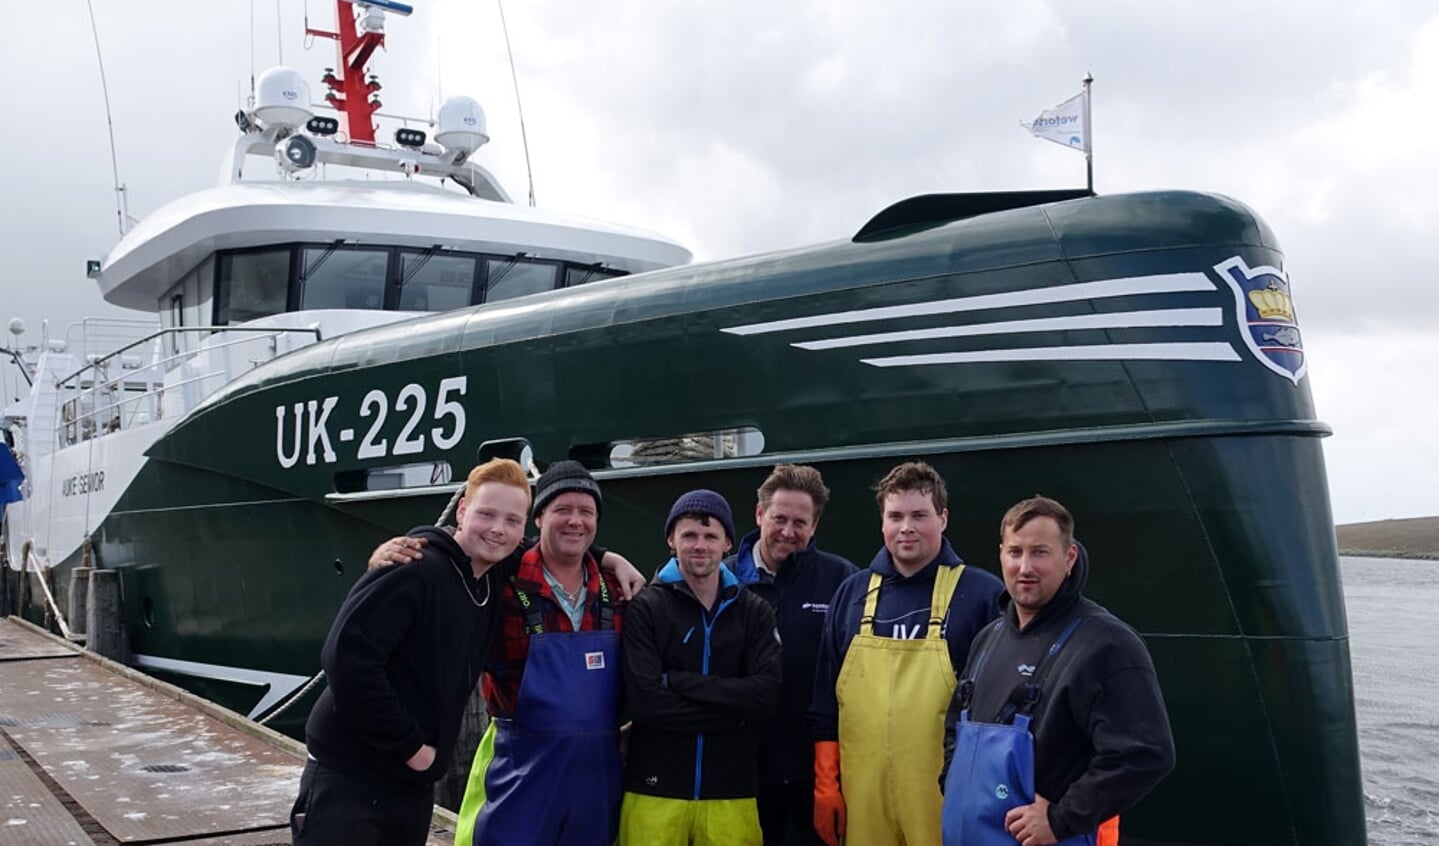  De bemanning van de u2018Auke Senioru2019. Van links naar rechts: Hessel Post (stagiair), Marco Vooijs, Jurian Brouwer, schipper Tromp van Slooten, machinist Michiel van Es en Pieter Kuyt.  